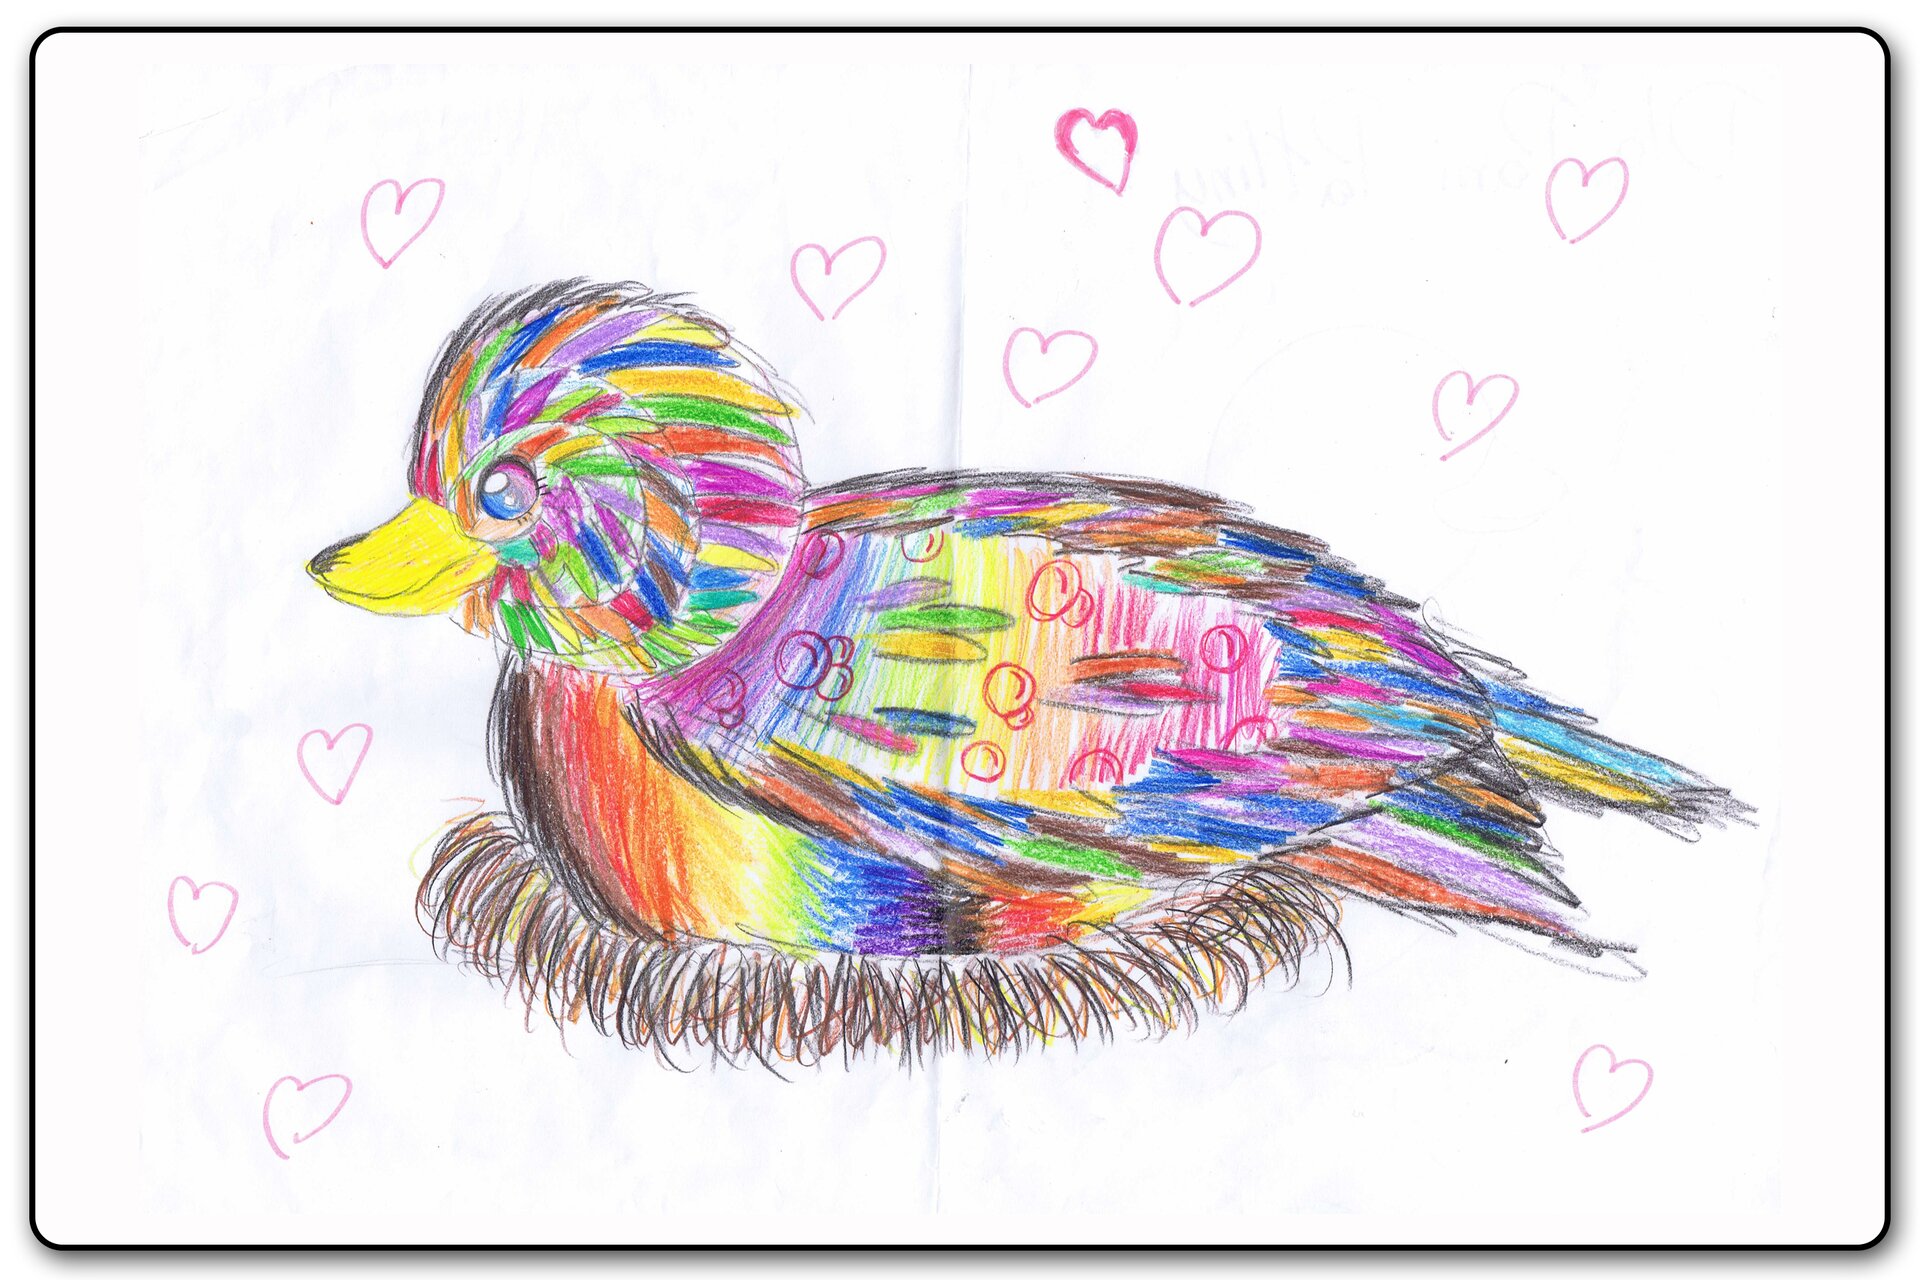 Ilustracja 6 galerii prac plastycznych uczniów. Ilustracja przedstawia bardzo kolorowego ptaka siedzącego w gnieździe. Dookoła niego latają serca.